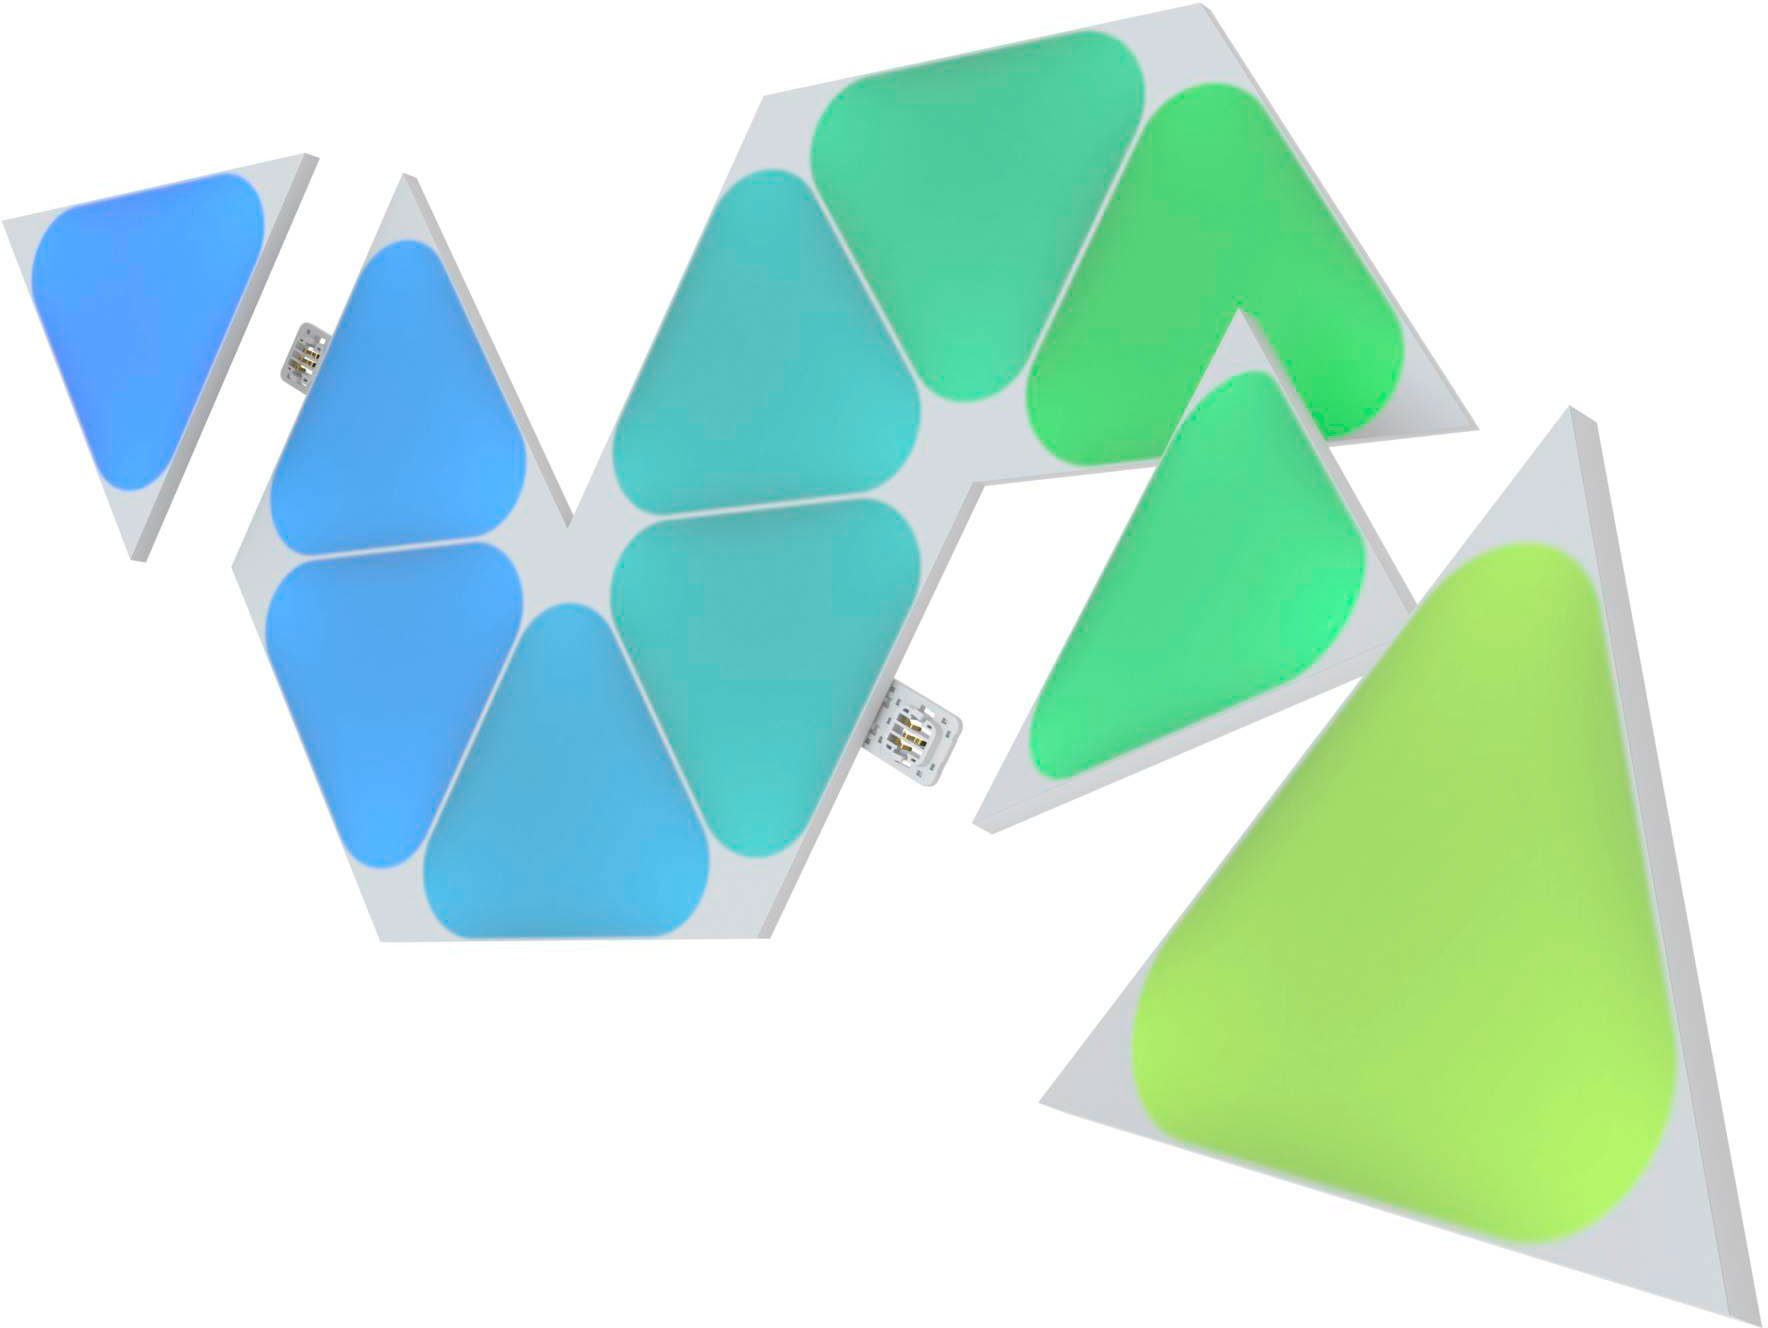 Triangles, fest integriert, Dimmfunktion, nanoleaf Farbwechsler LED LED Panel